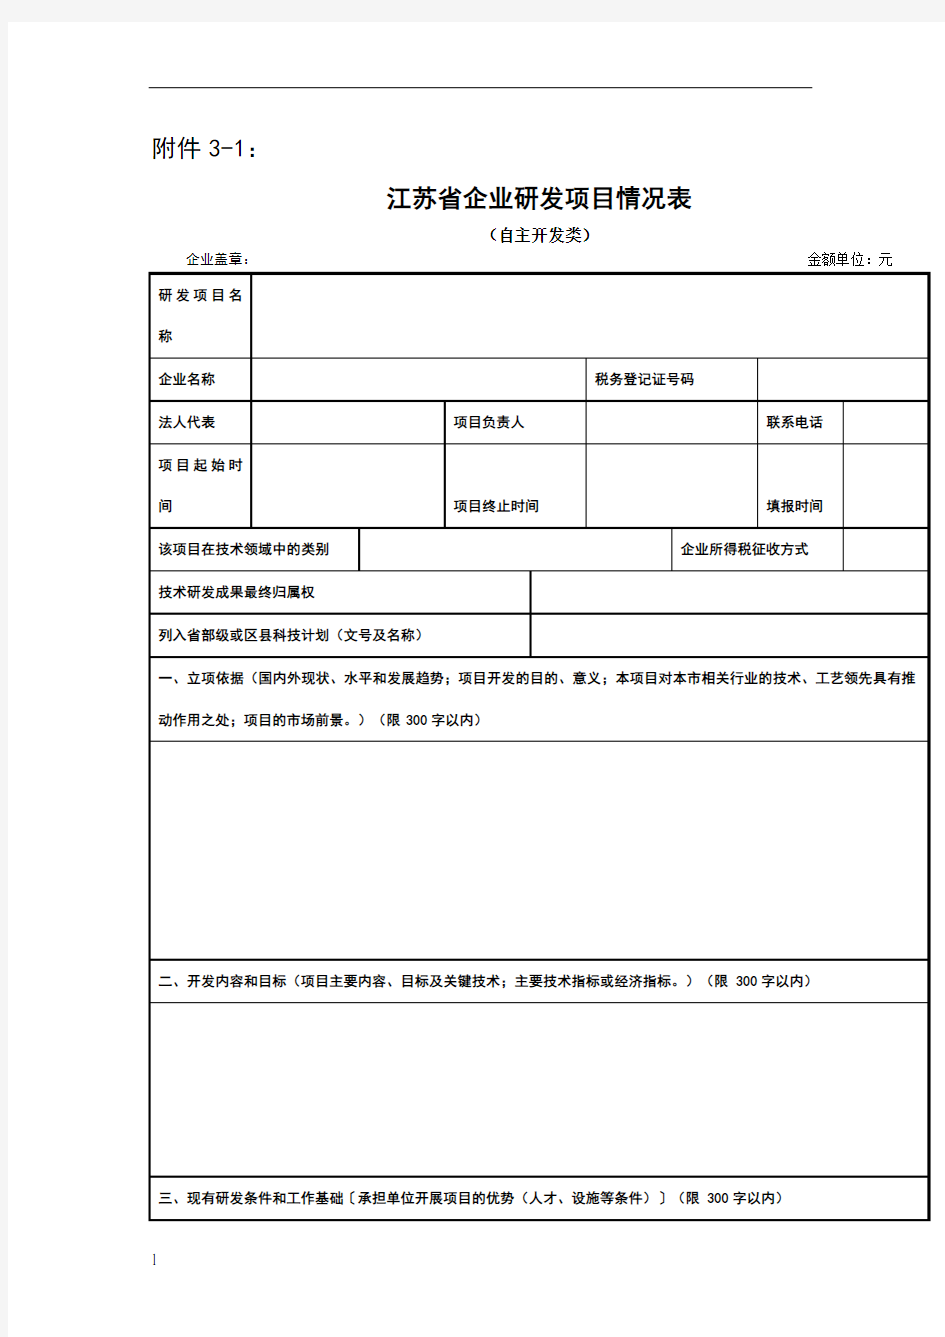 江苏省企业研发项目情况表(自主开发类)